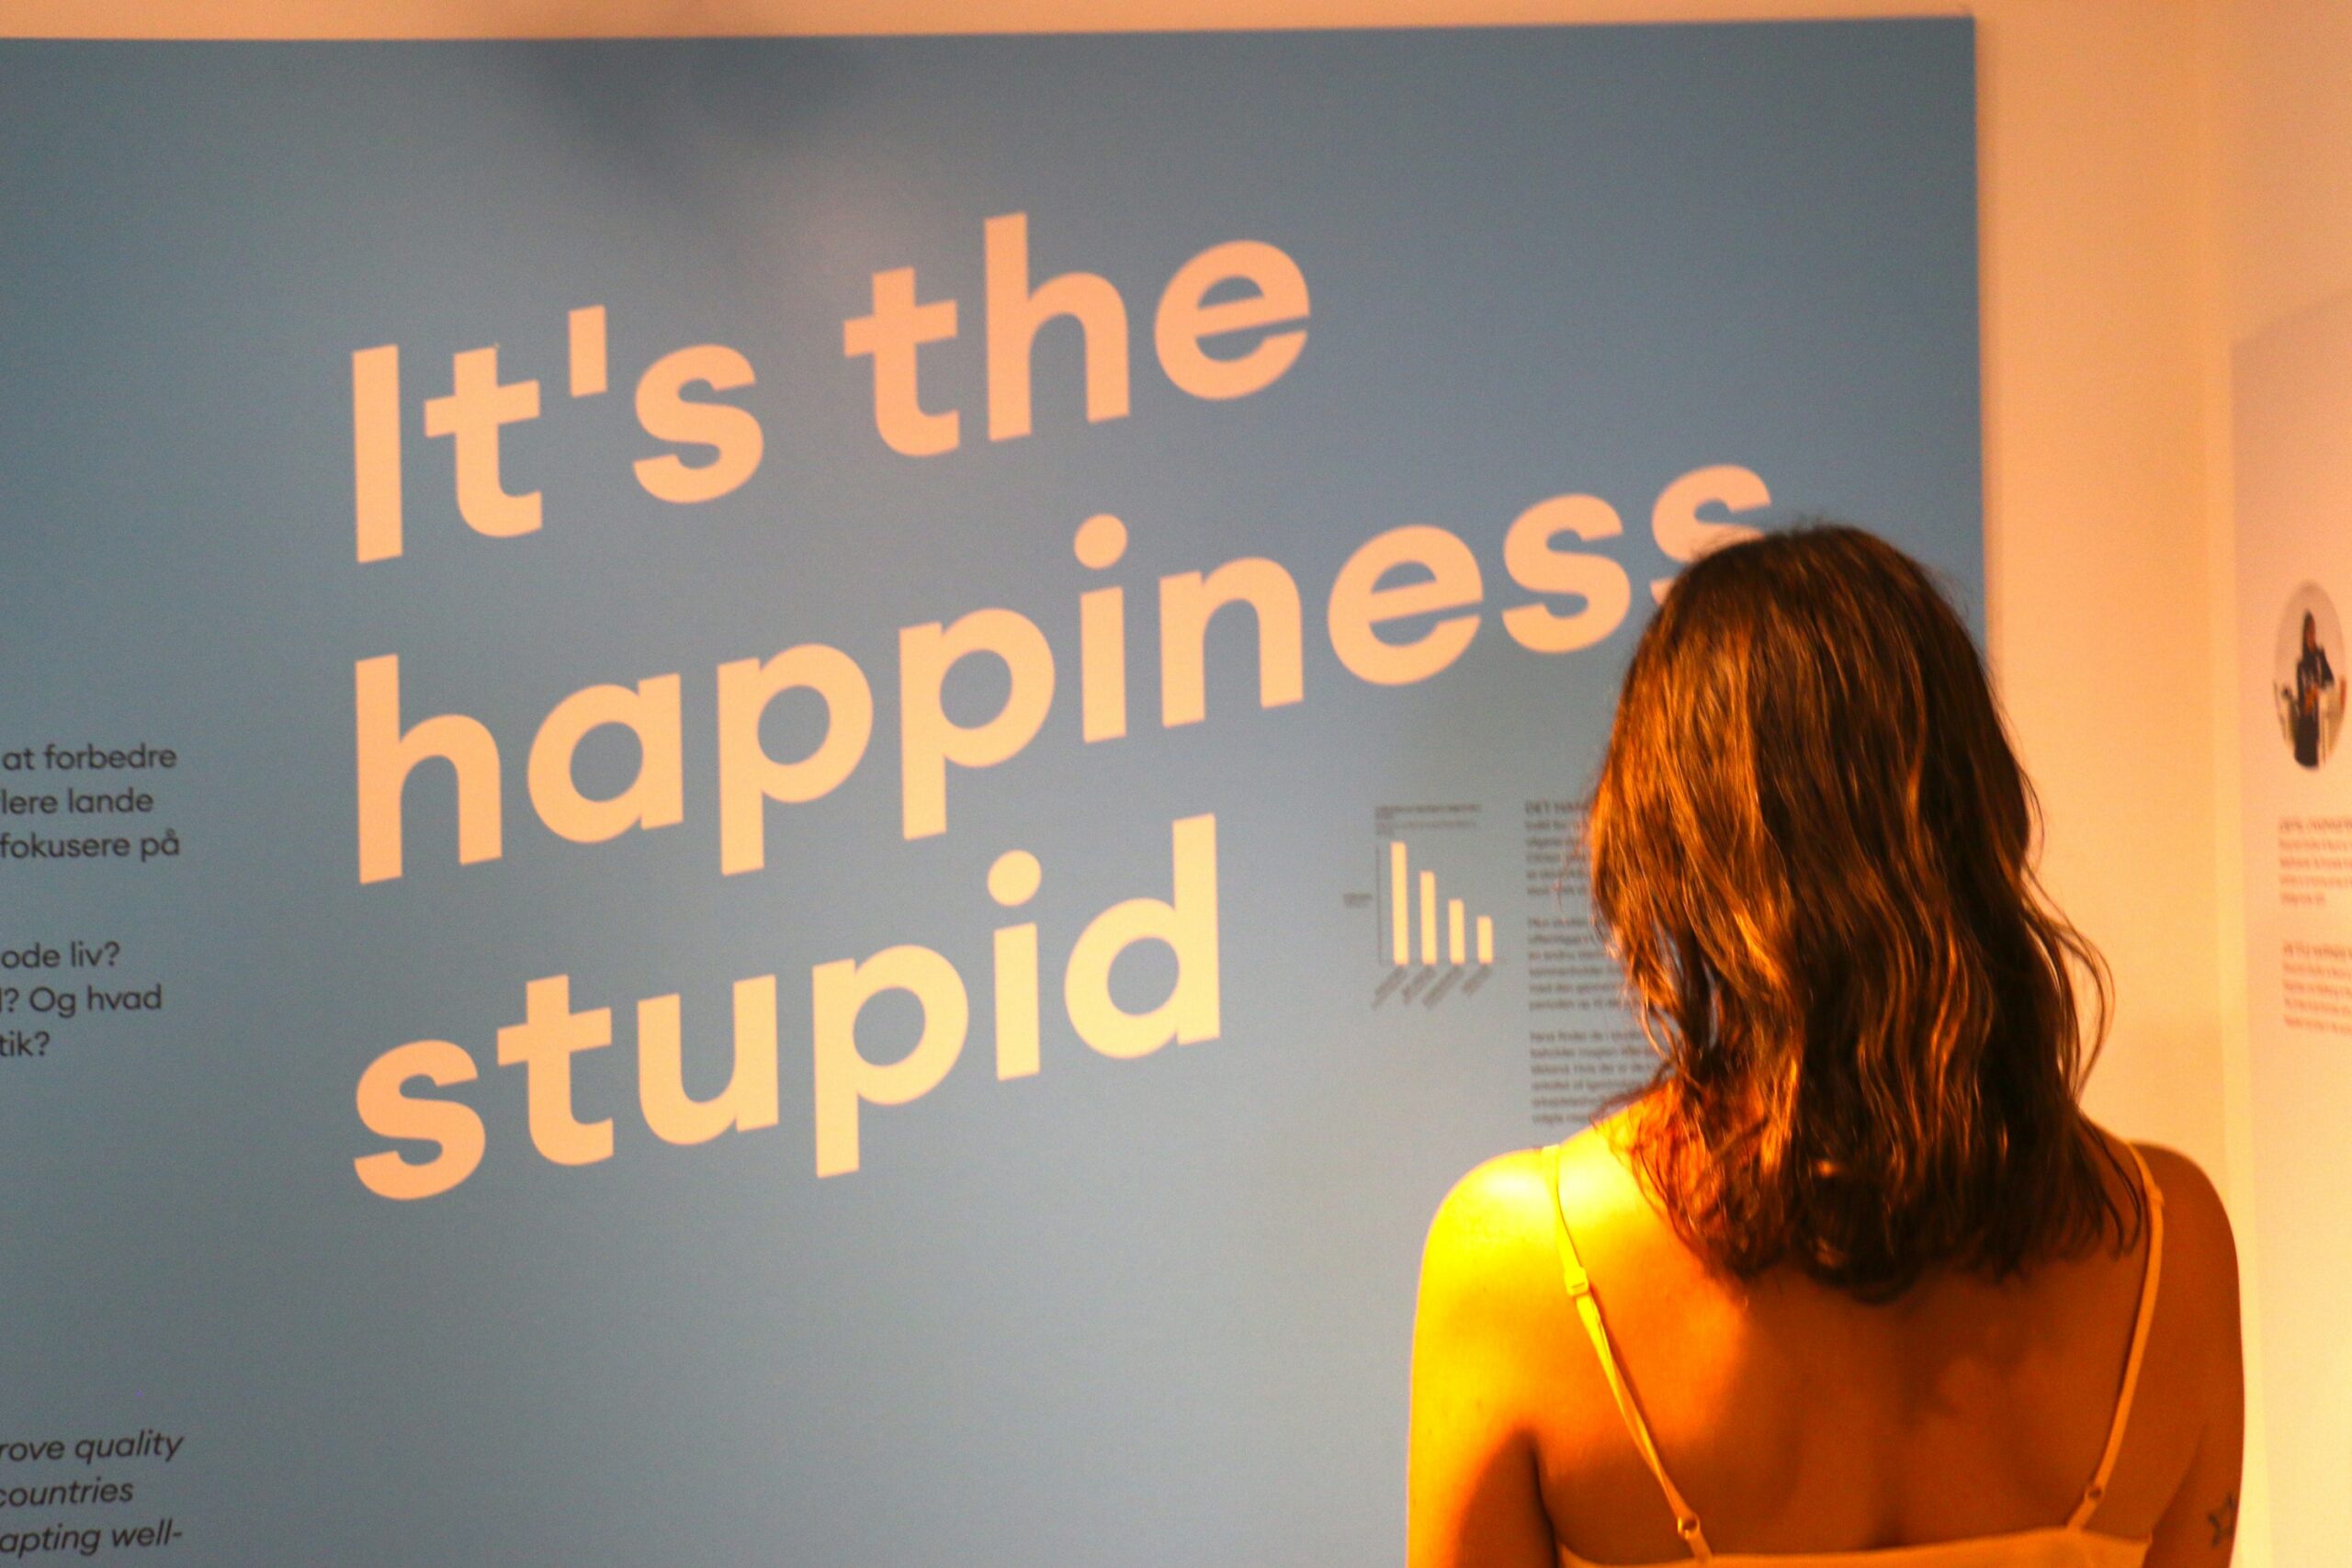 Museum of happiness’ has opened in copenhagen